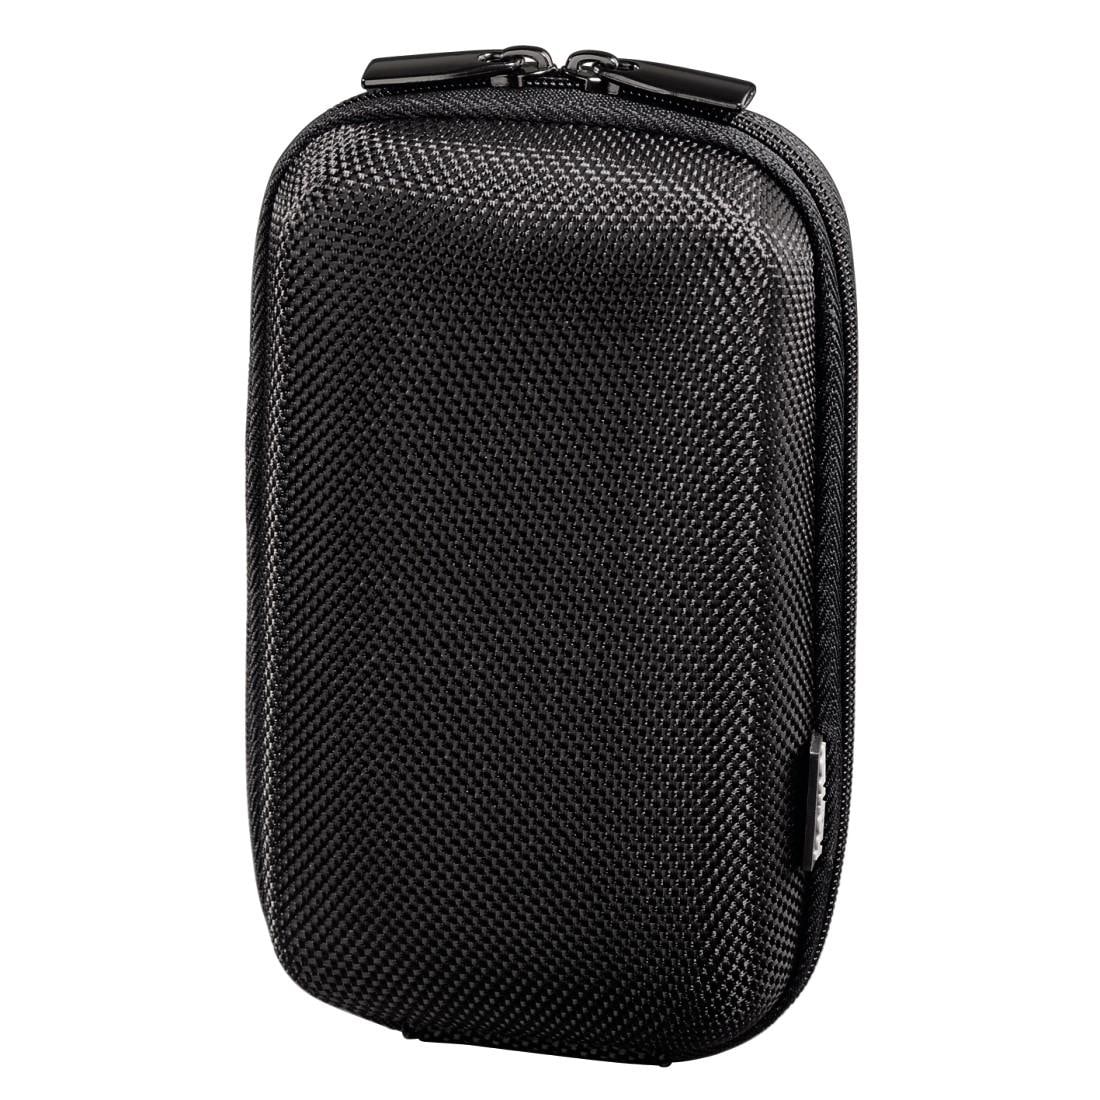 Hama Kameratasche »Hardcase Tasche für Kamera, Schwarz«, Innenmaße 7x4x12,5 cm